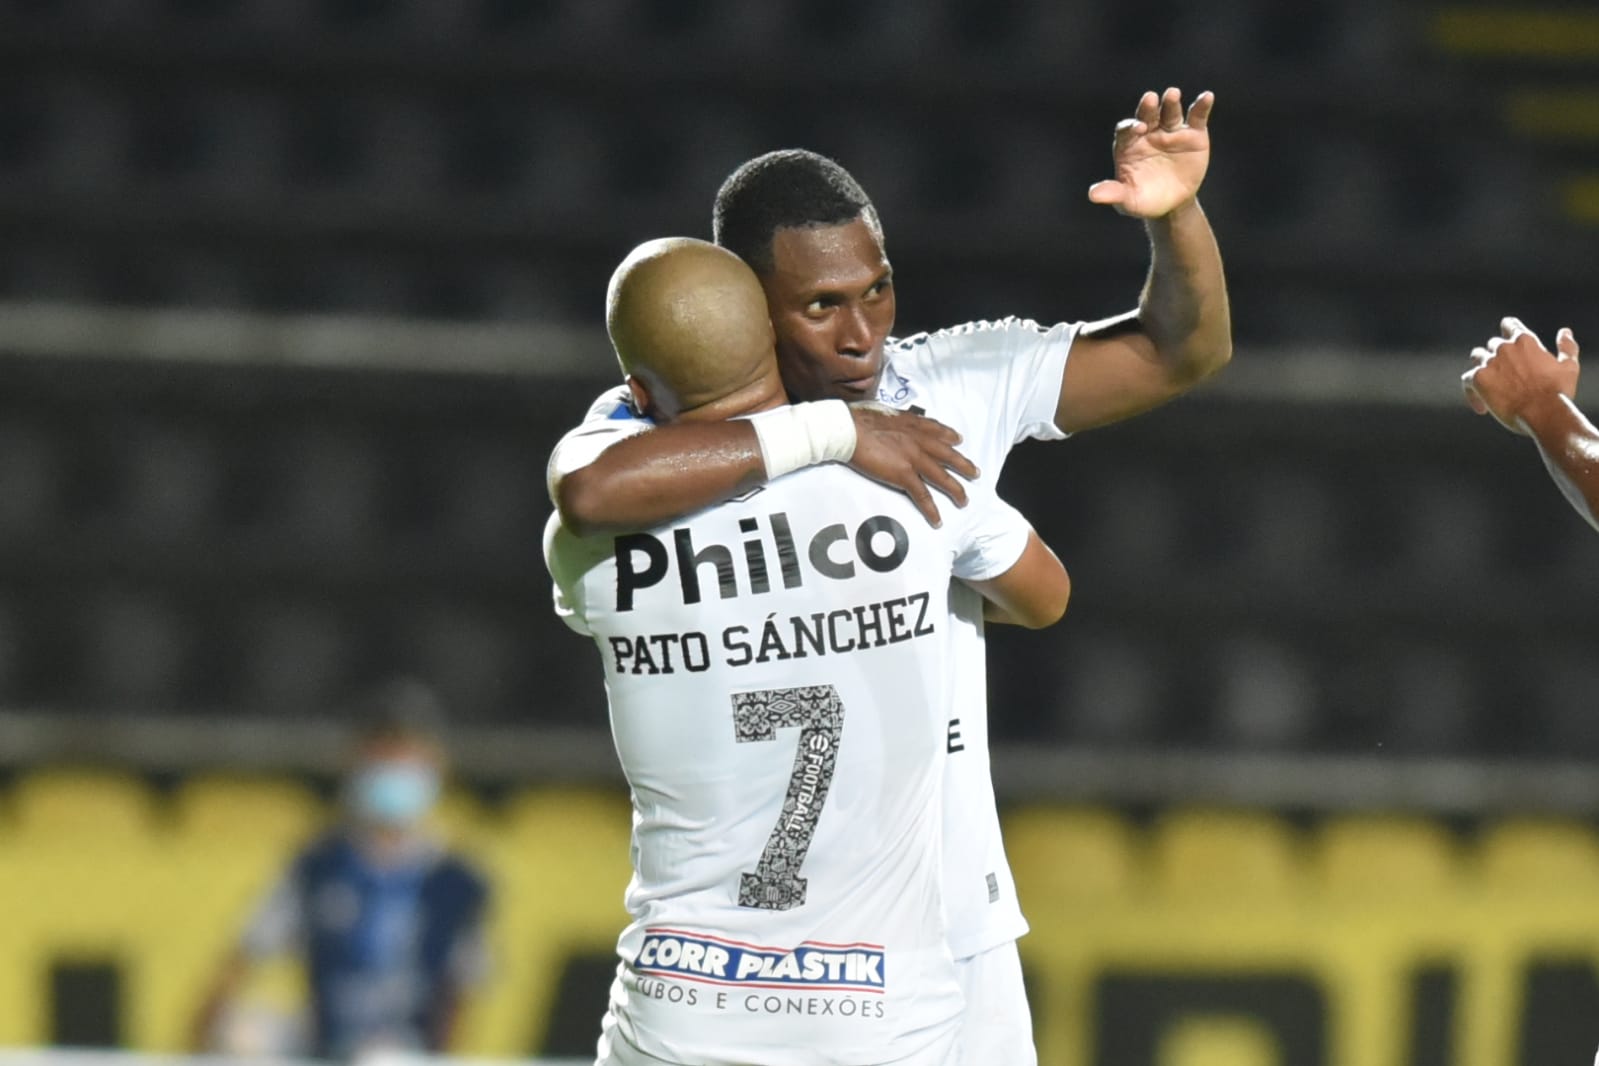 Santos FC se livra de Bryan Angulo